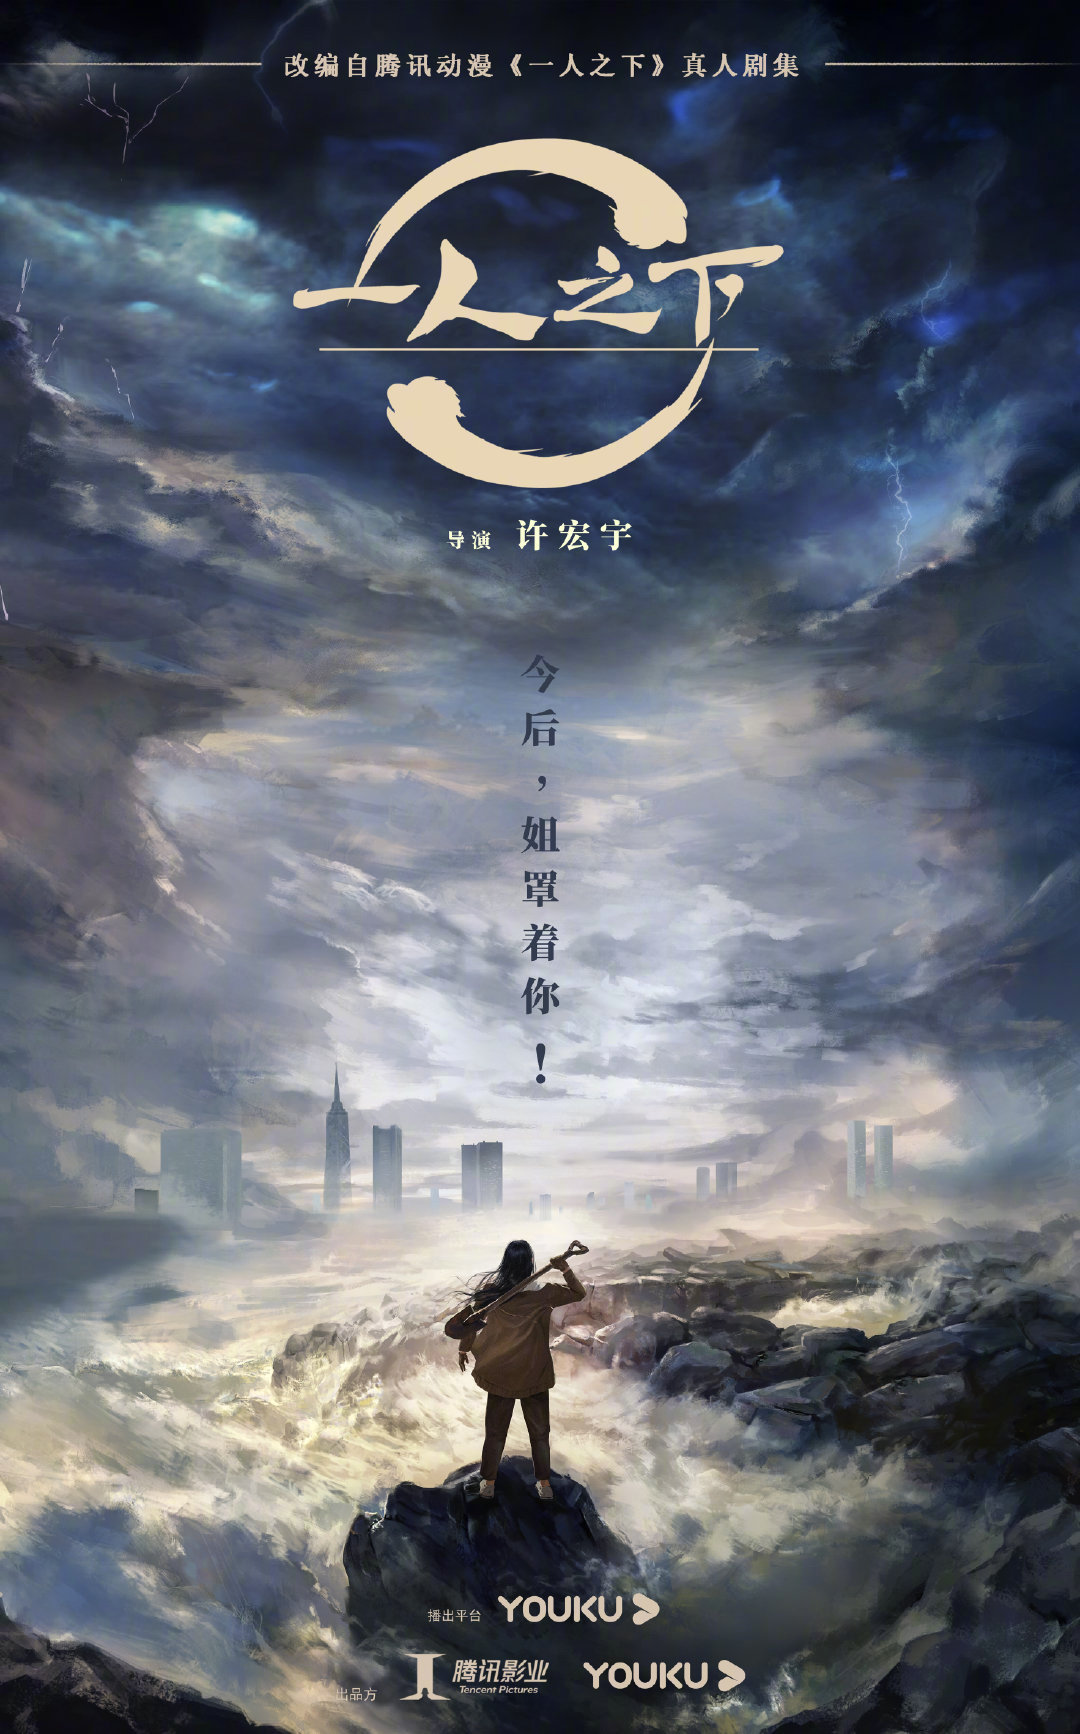 《一人之下》剧版确定将由许宏宇执导,将于今年第四季